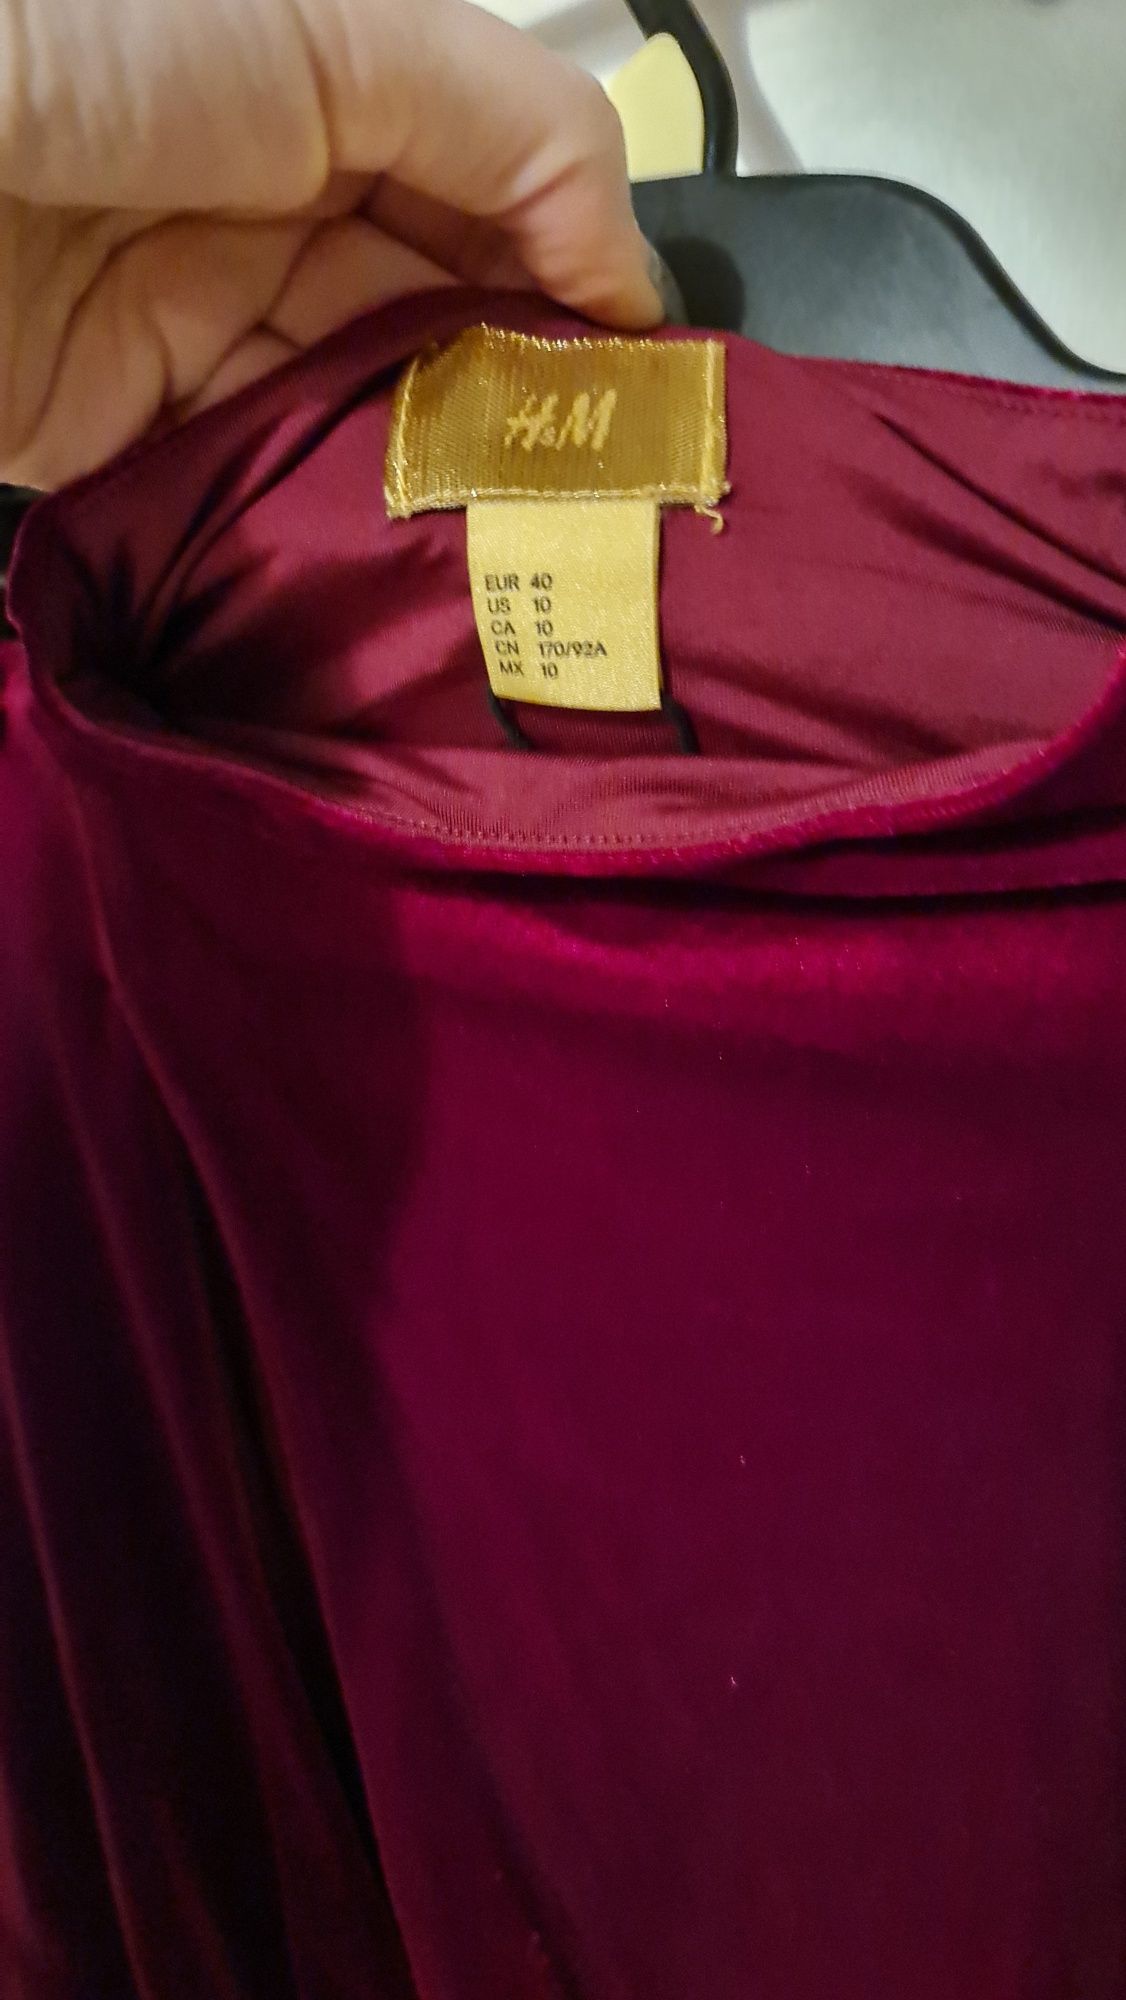 Welurowa burgundowa / bordowa sukienka roz 36/38 H&M